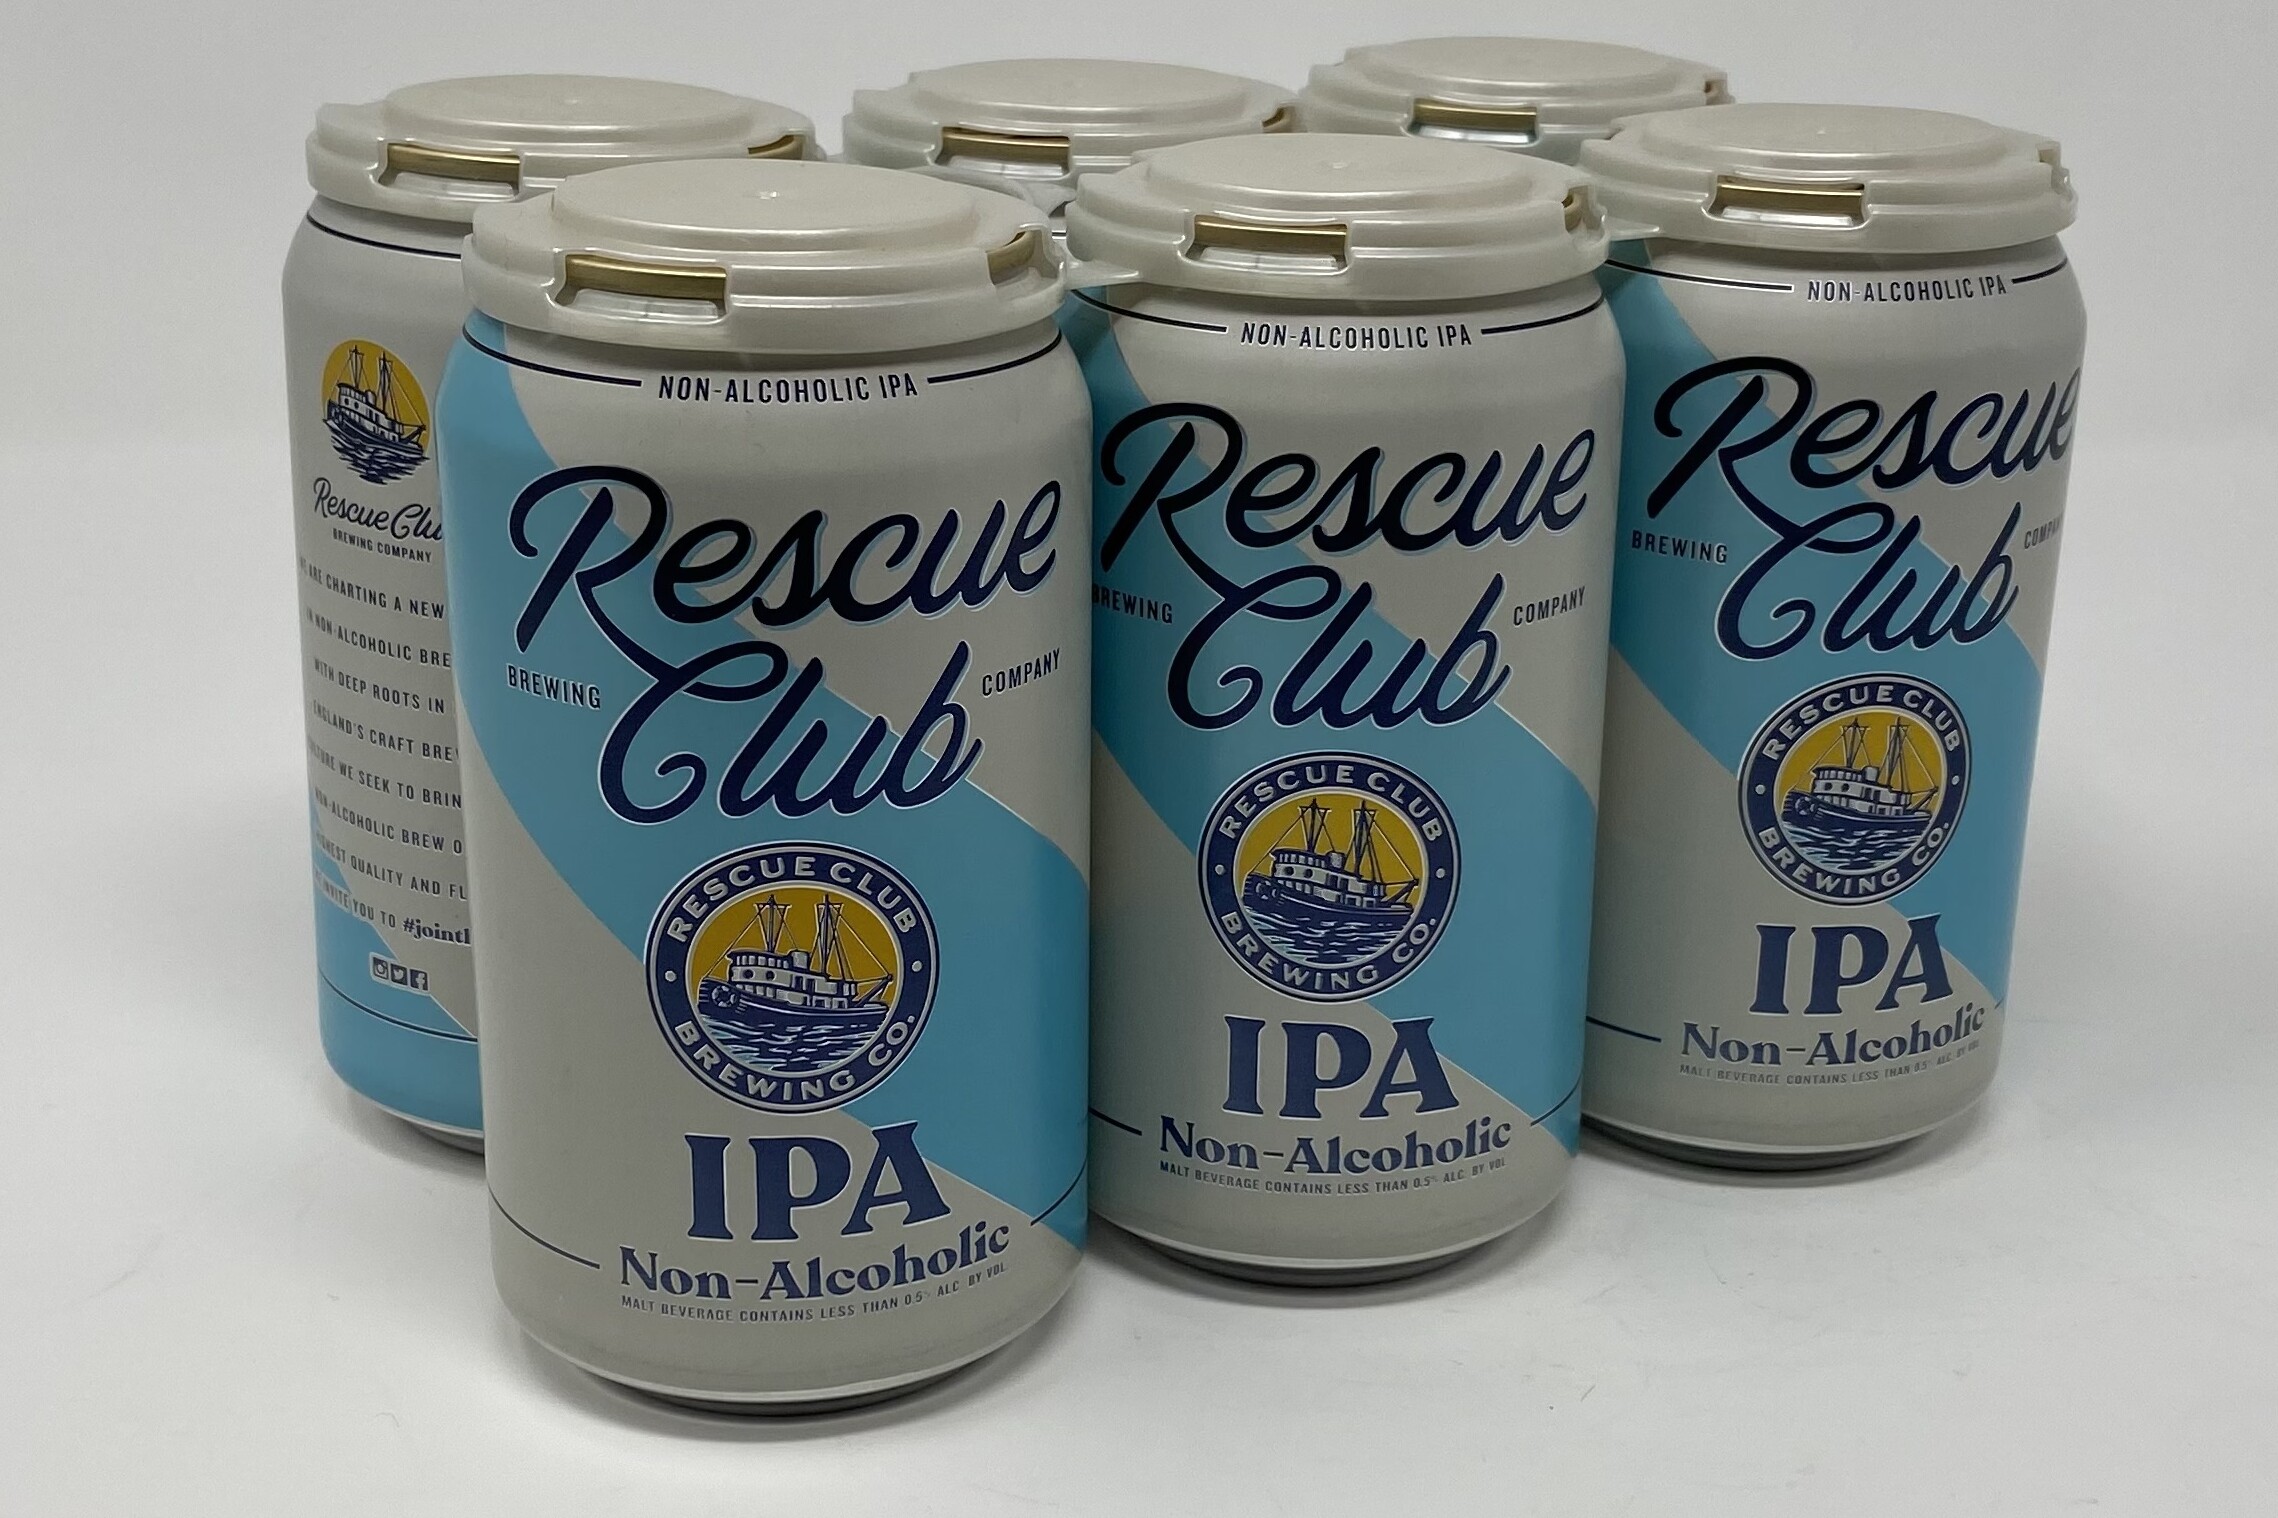 Rescue Club Brewing Company, IPA Non-alcoholic